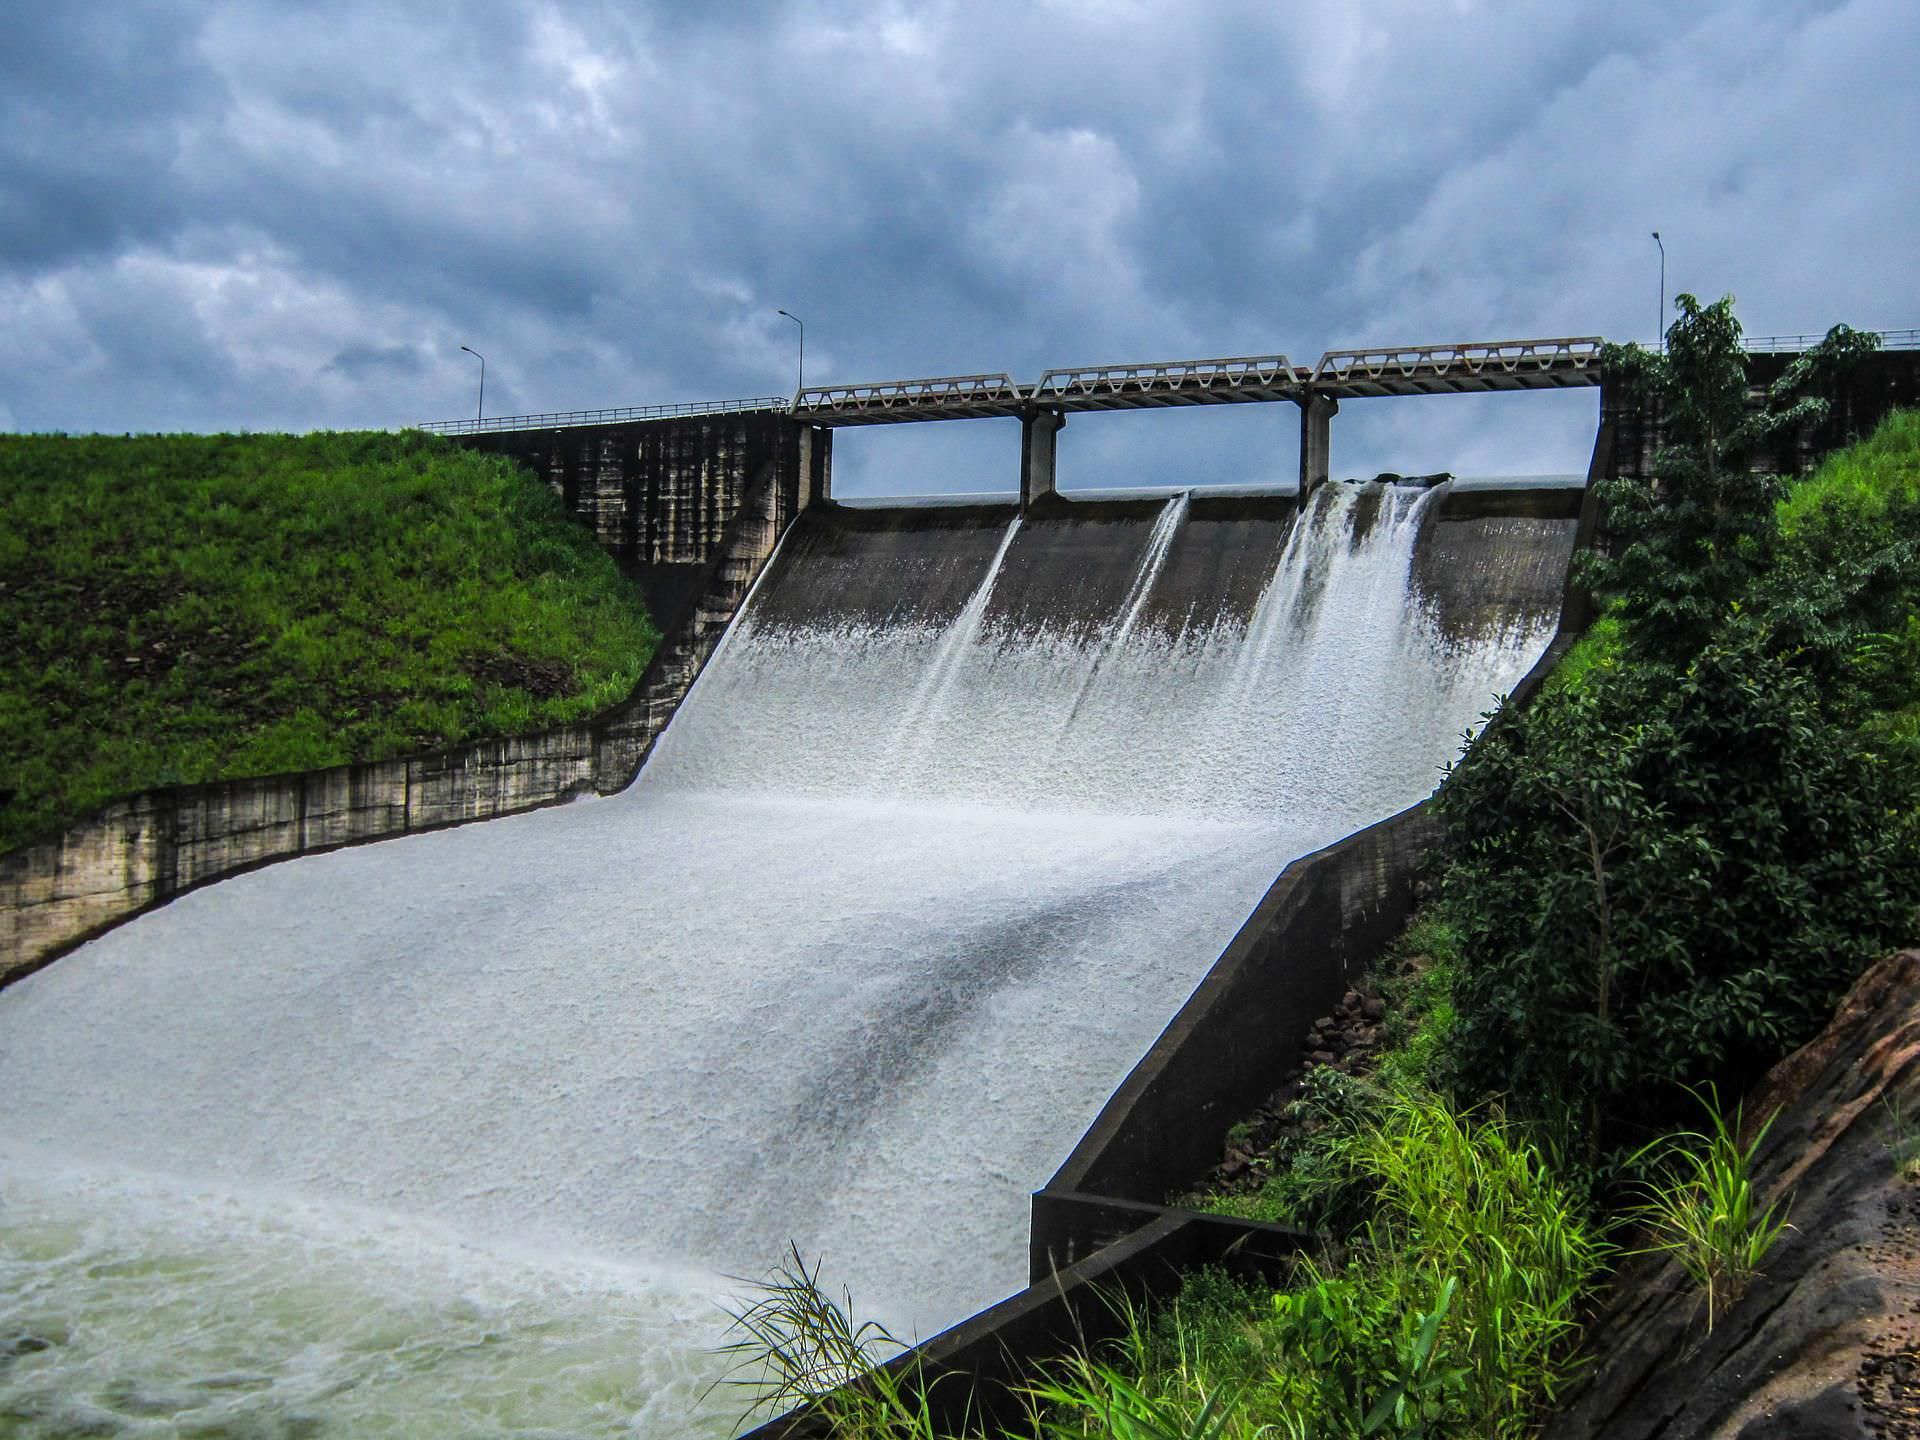 brana-hidroelektrana-pixabay.jpg